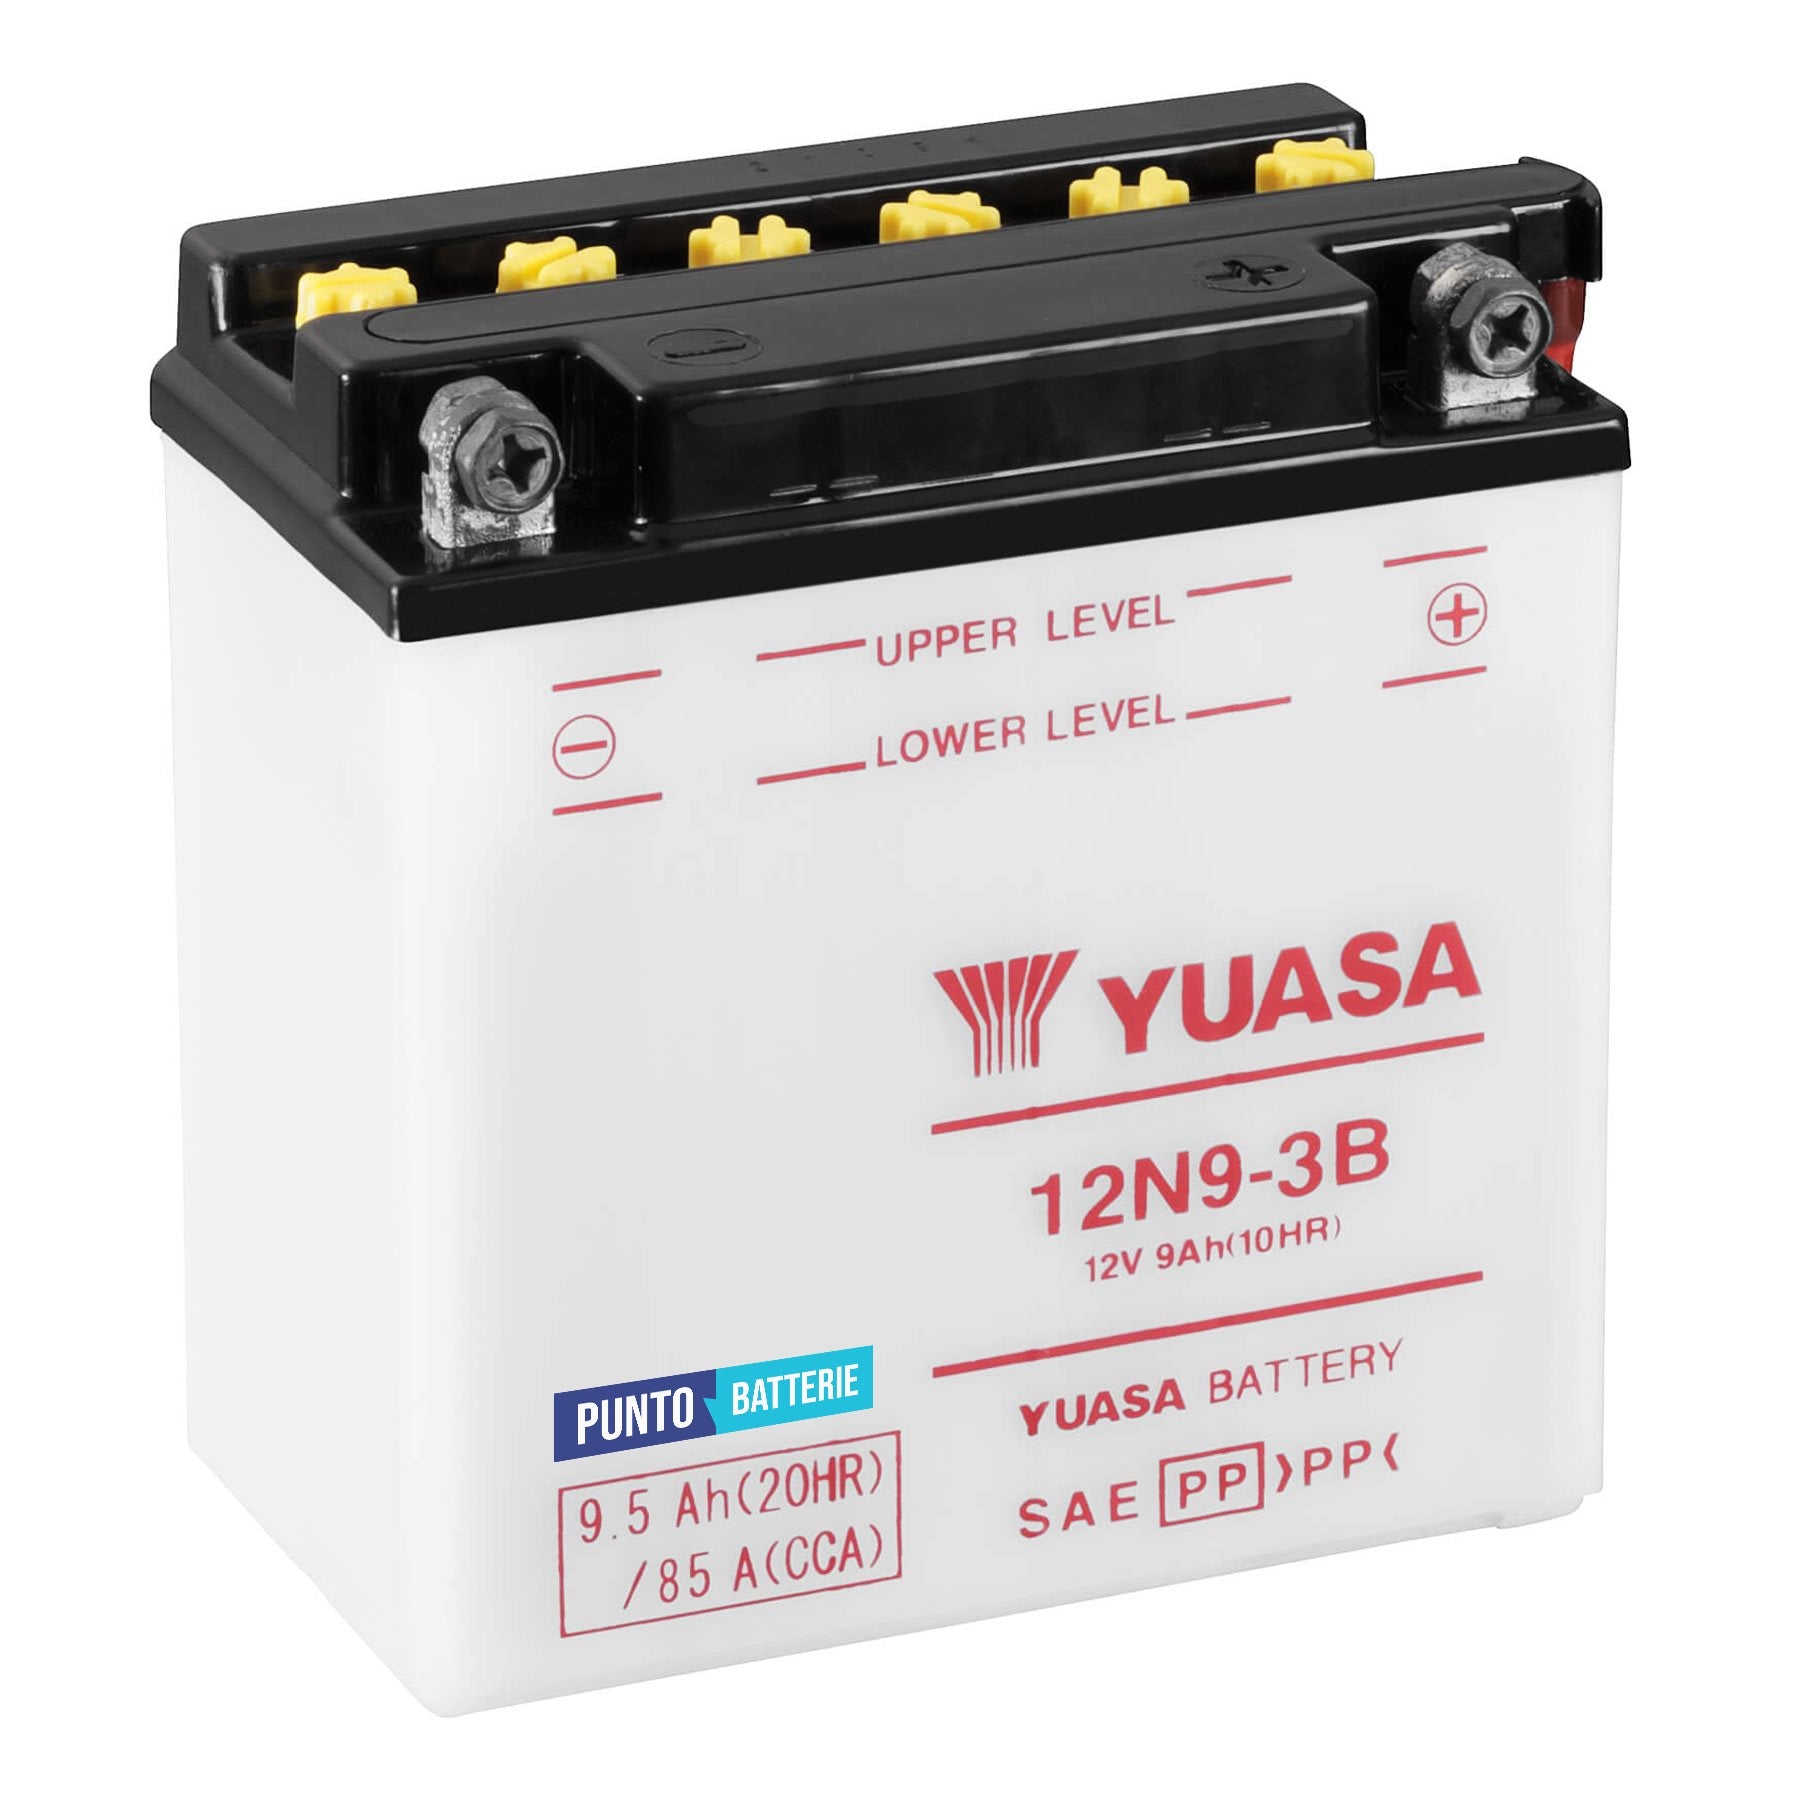 Batteria originale Yuasa Conventional 12N9-3B, dimensioni 135 x 75 x 139, polo positivo a destra, 12 volt, 9 amperora, 85 ampere. Batteria per moto, scooter e powersport.